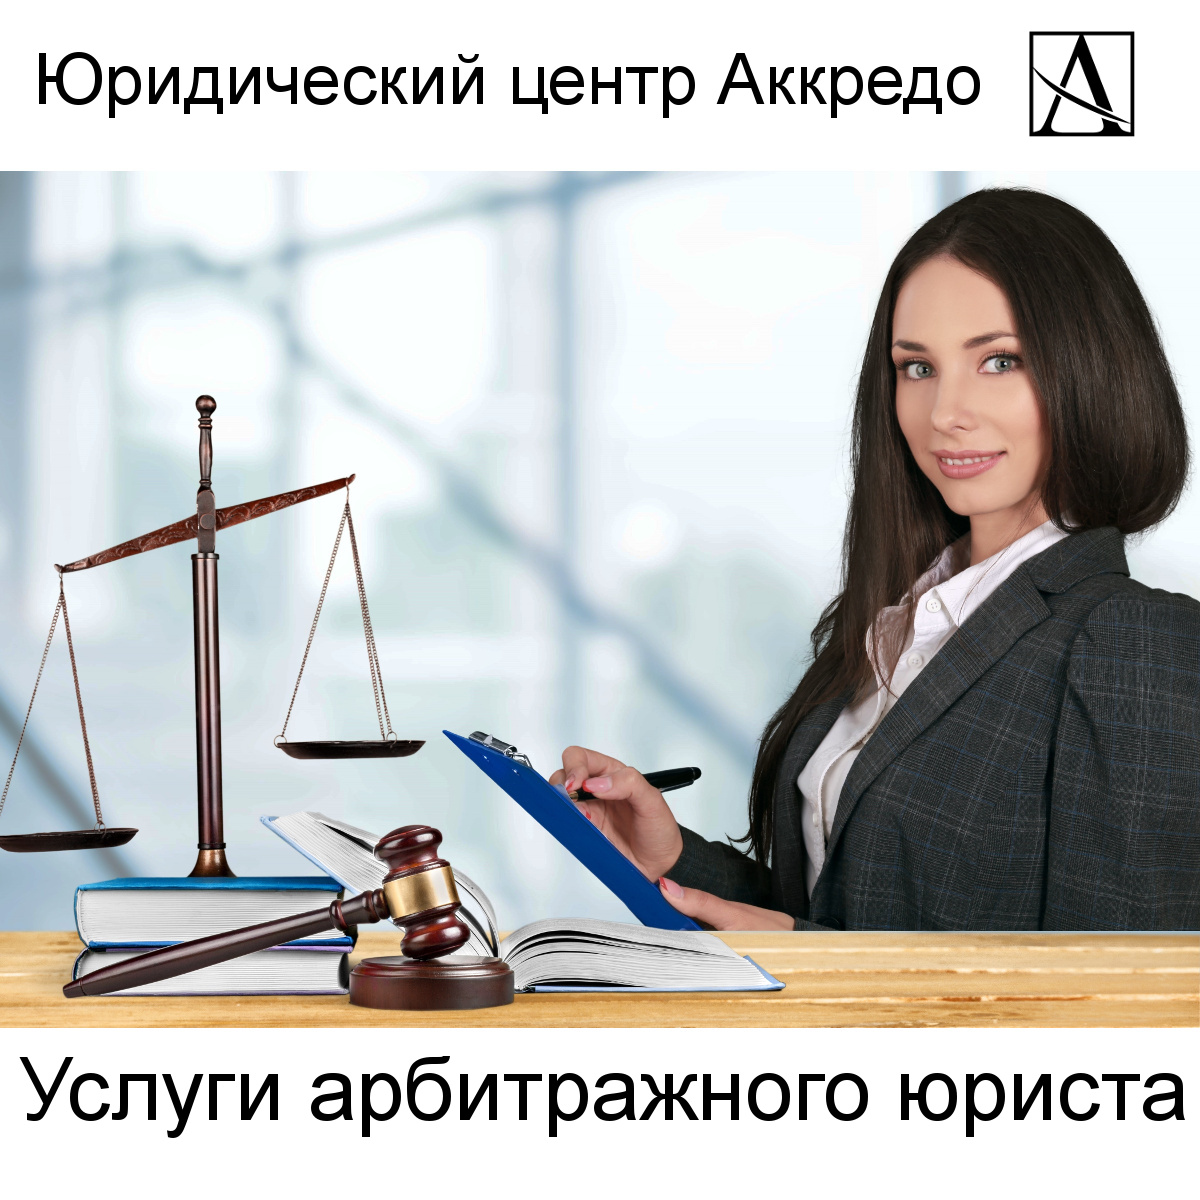 Юридический центр Аккредо оказывает услуги по полному сопровождению арбитражных дел